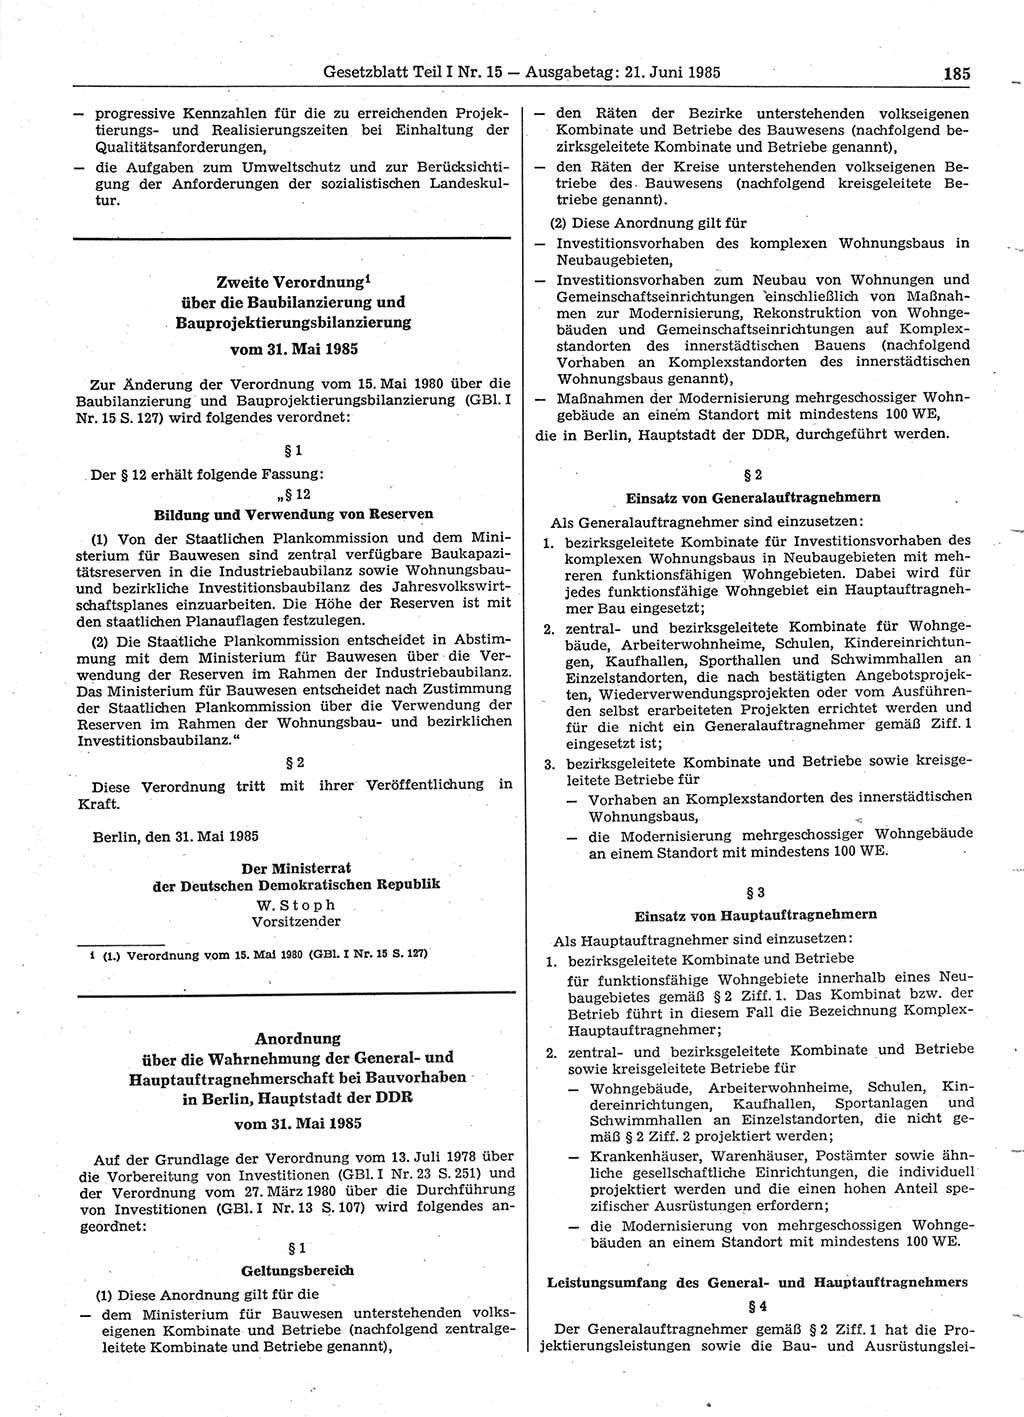 Gesetzblatt (GBl.) der Deutschen Demokratischen Republik (DDR) Teil Ⅰ 1985, Seite 185 (GBl. DDR Ⅰ 1985, S. 185)